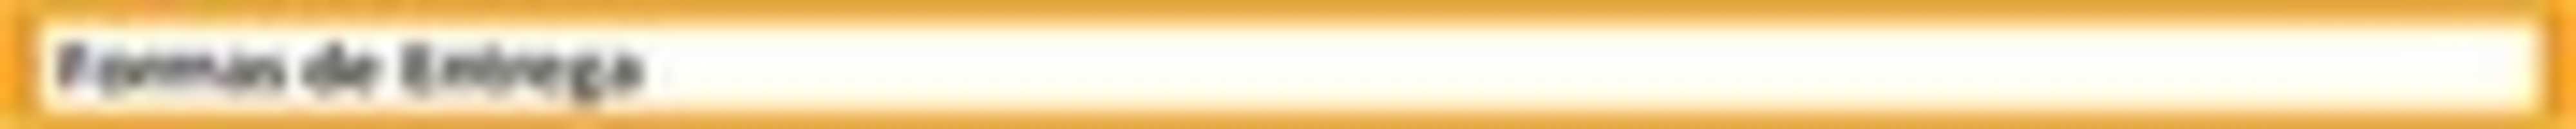 জিআইএমপি অনলাইন ইমেজ এডিটর দিয়ে এডিট করার জন্য ফরমা_এন্টারগা ফ্রি ছবি বা ছবি বিনামূল্যে ডাউনলোড করুন